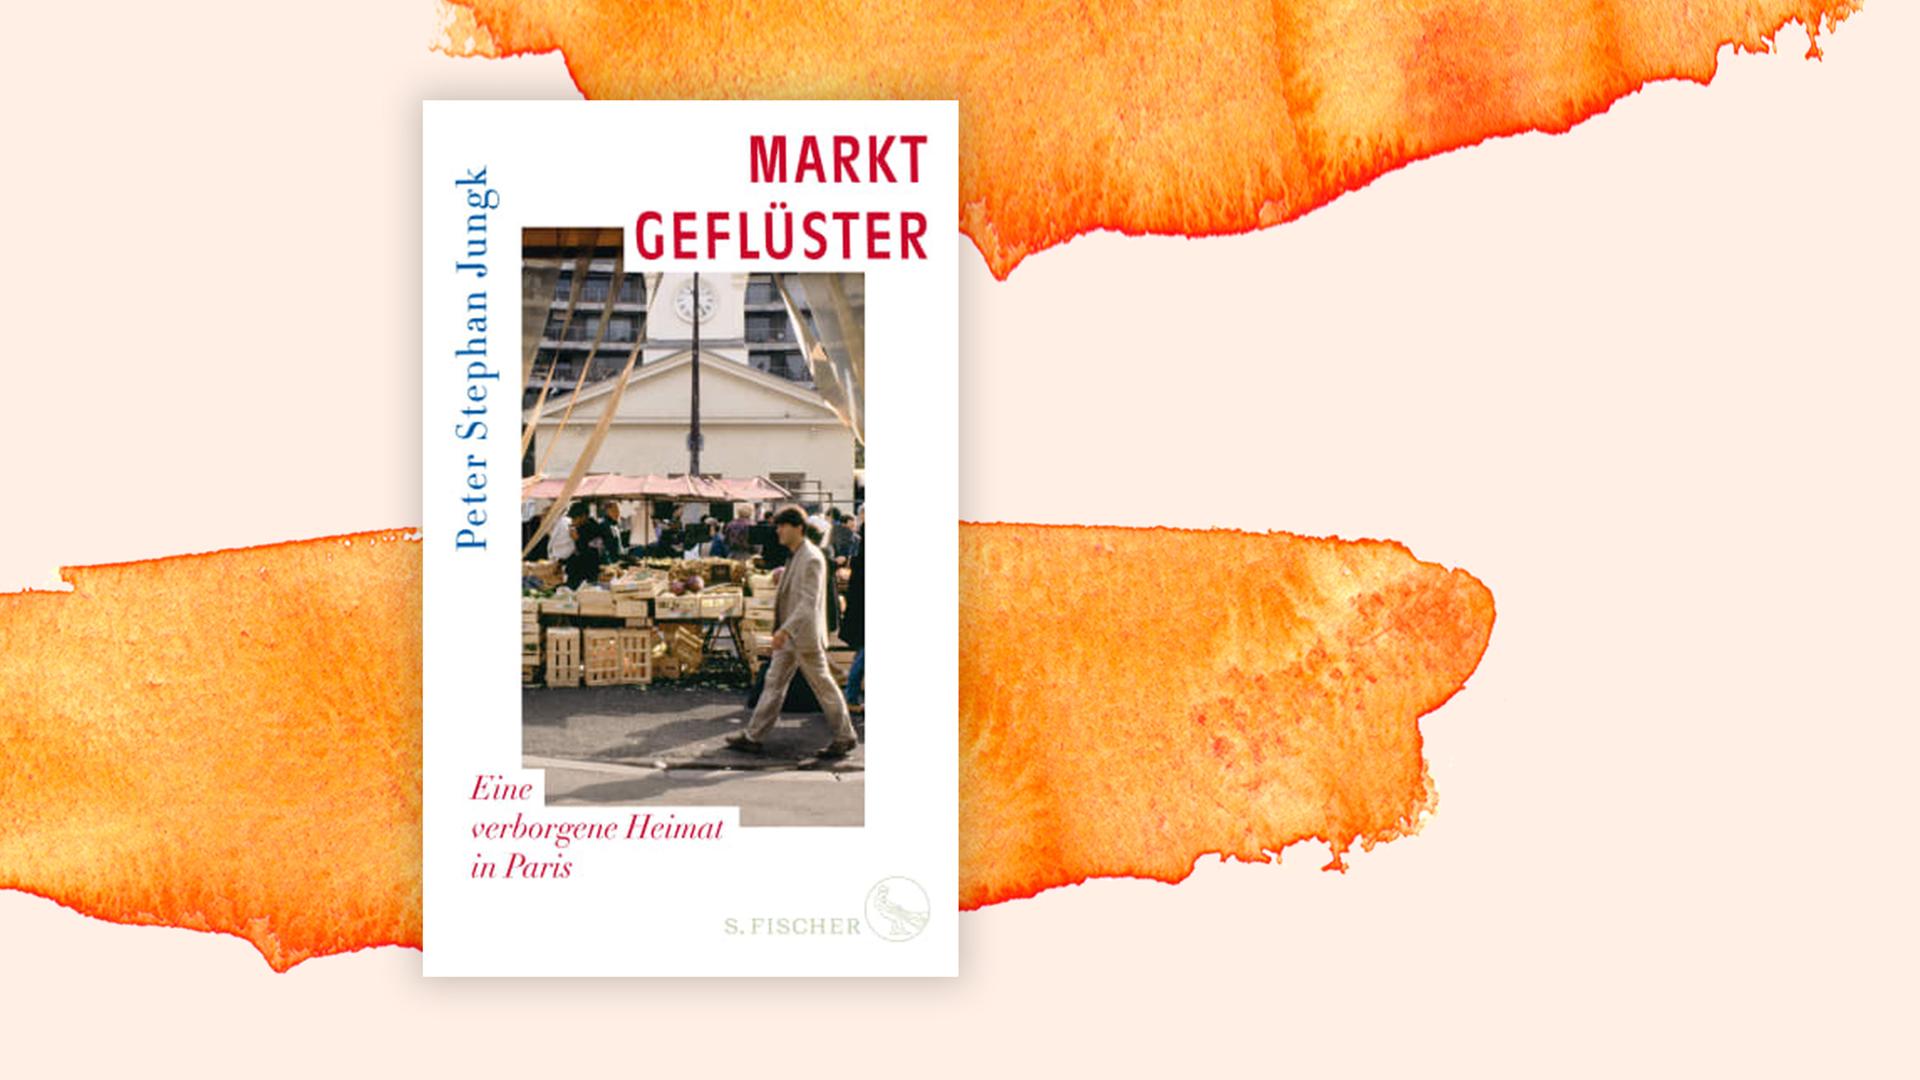 Das Cover des Buches von Peter Stephan Jungk, "Marktgeflüster. Eine verborgene Heimat in Paris" auf orange-weißem Hintergrund.